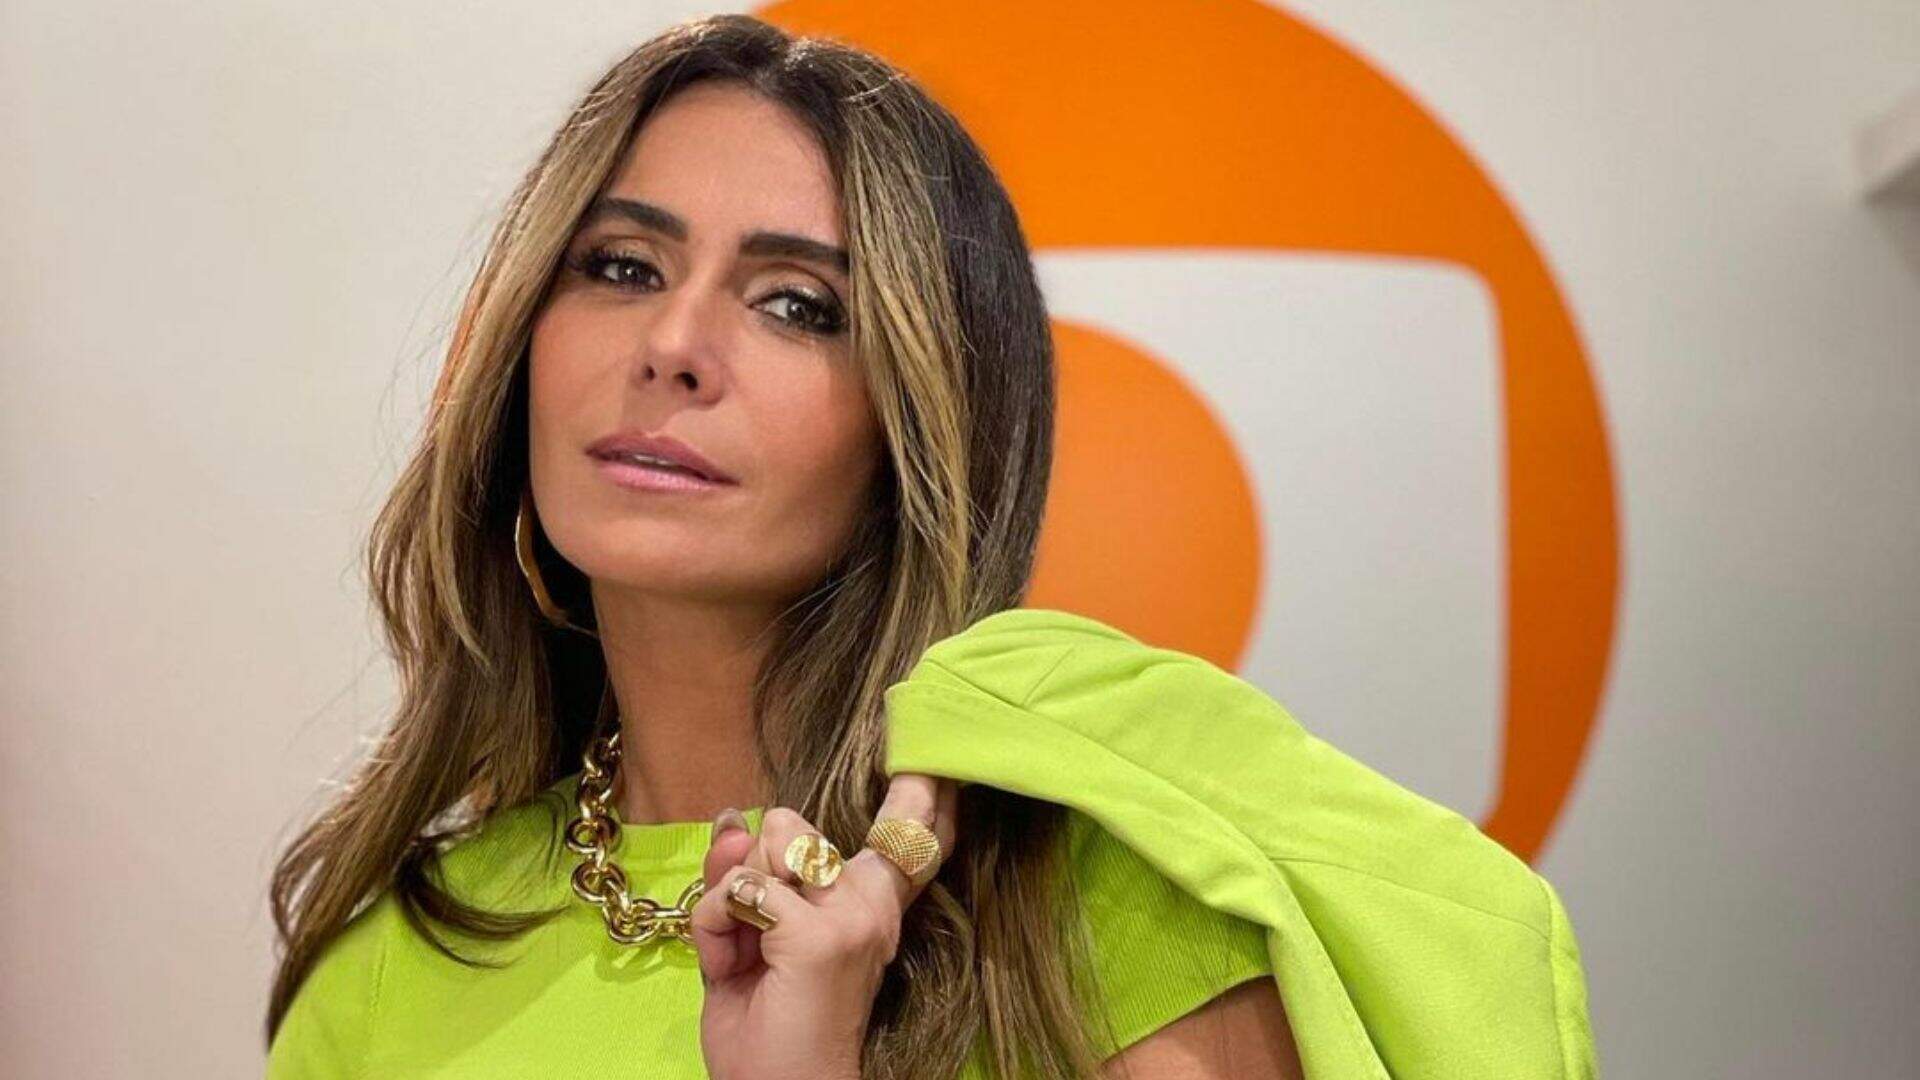 Giovanna Antonelli se despede de atuação em novelas com personagem em “Travessia” - Metropolitana FM